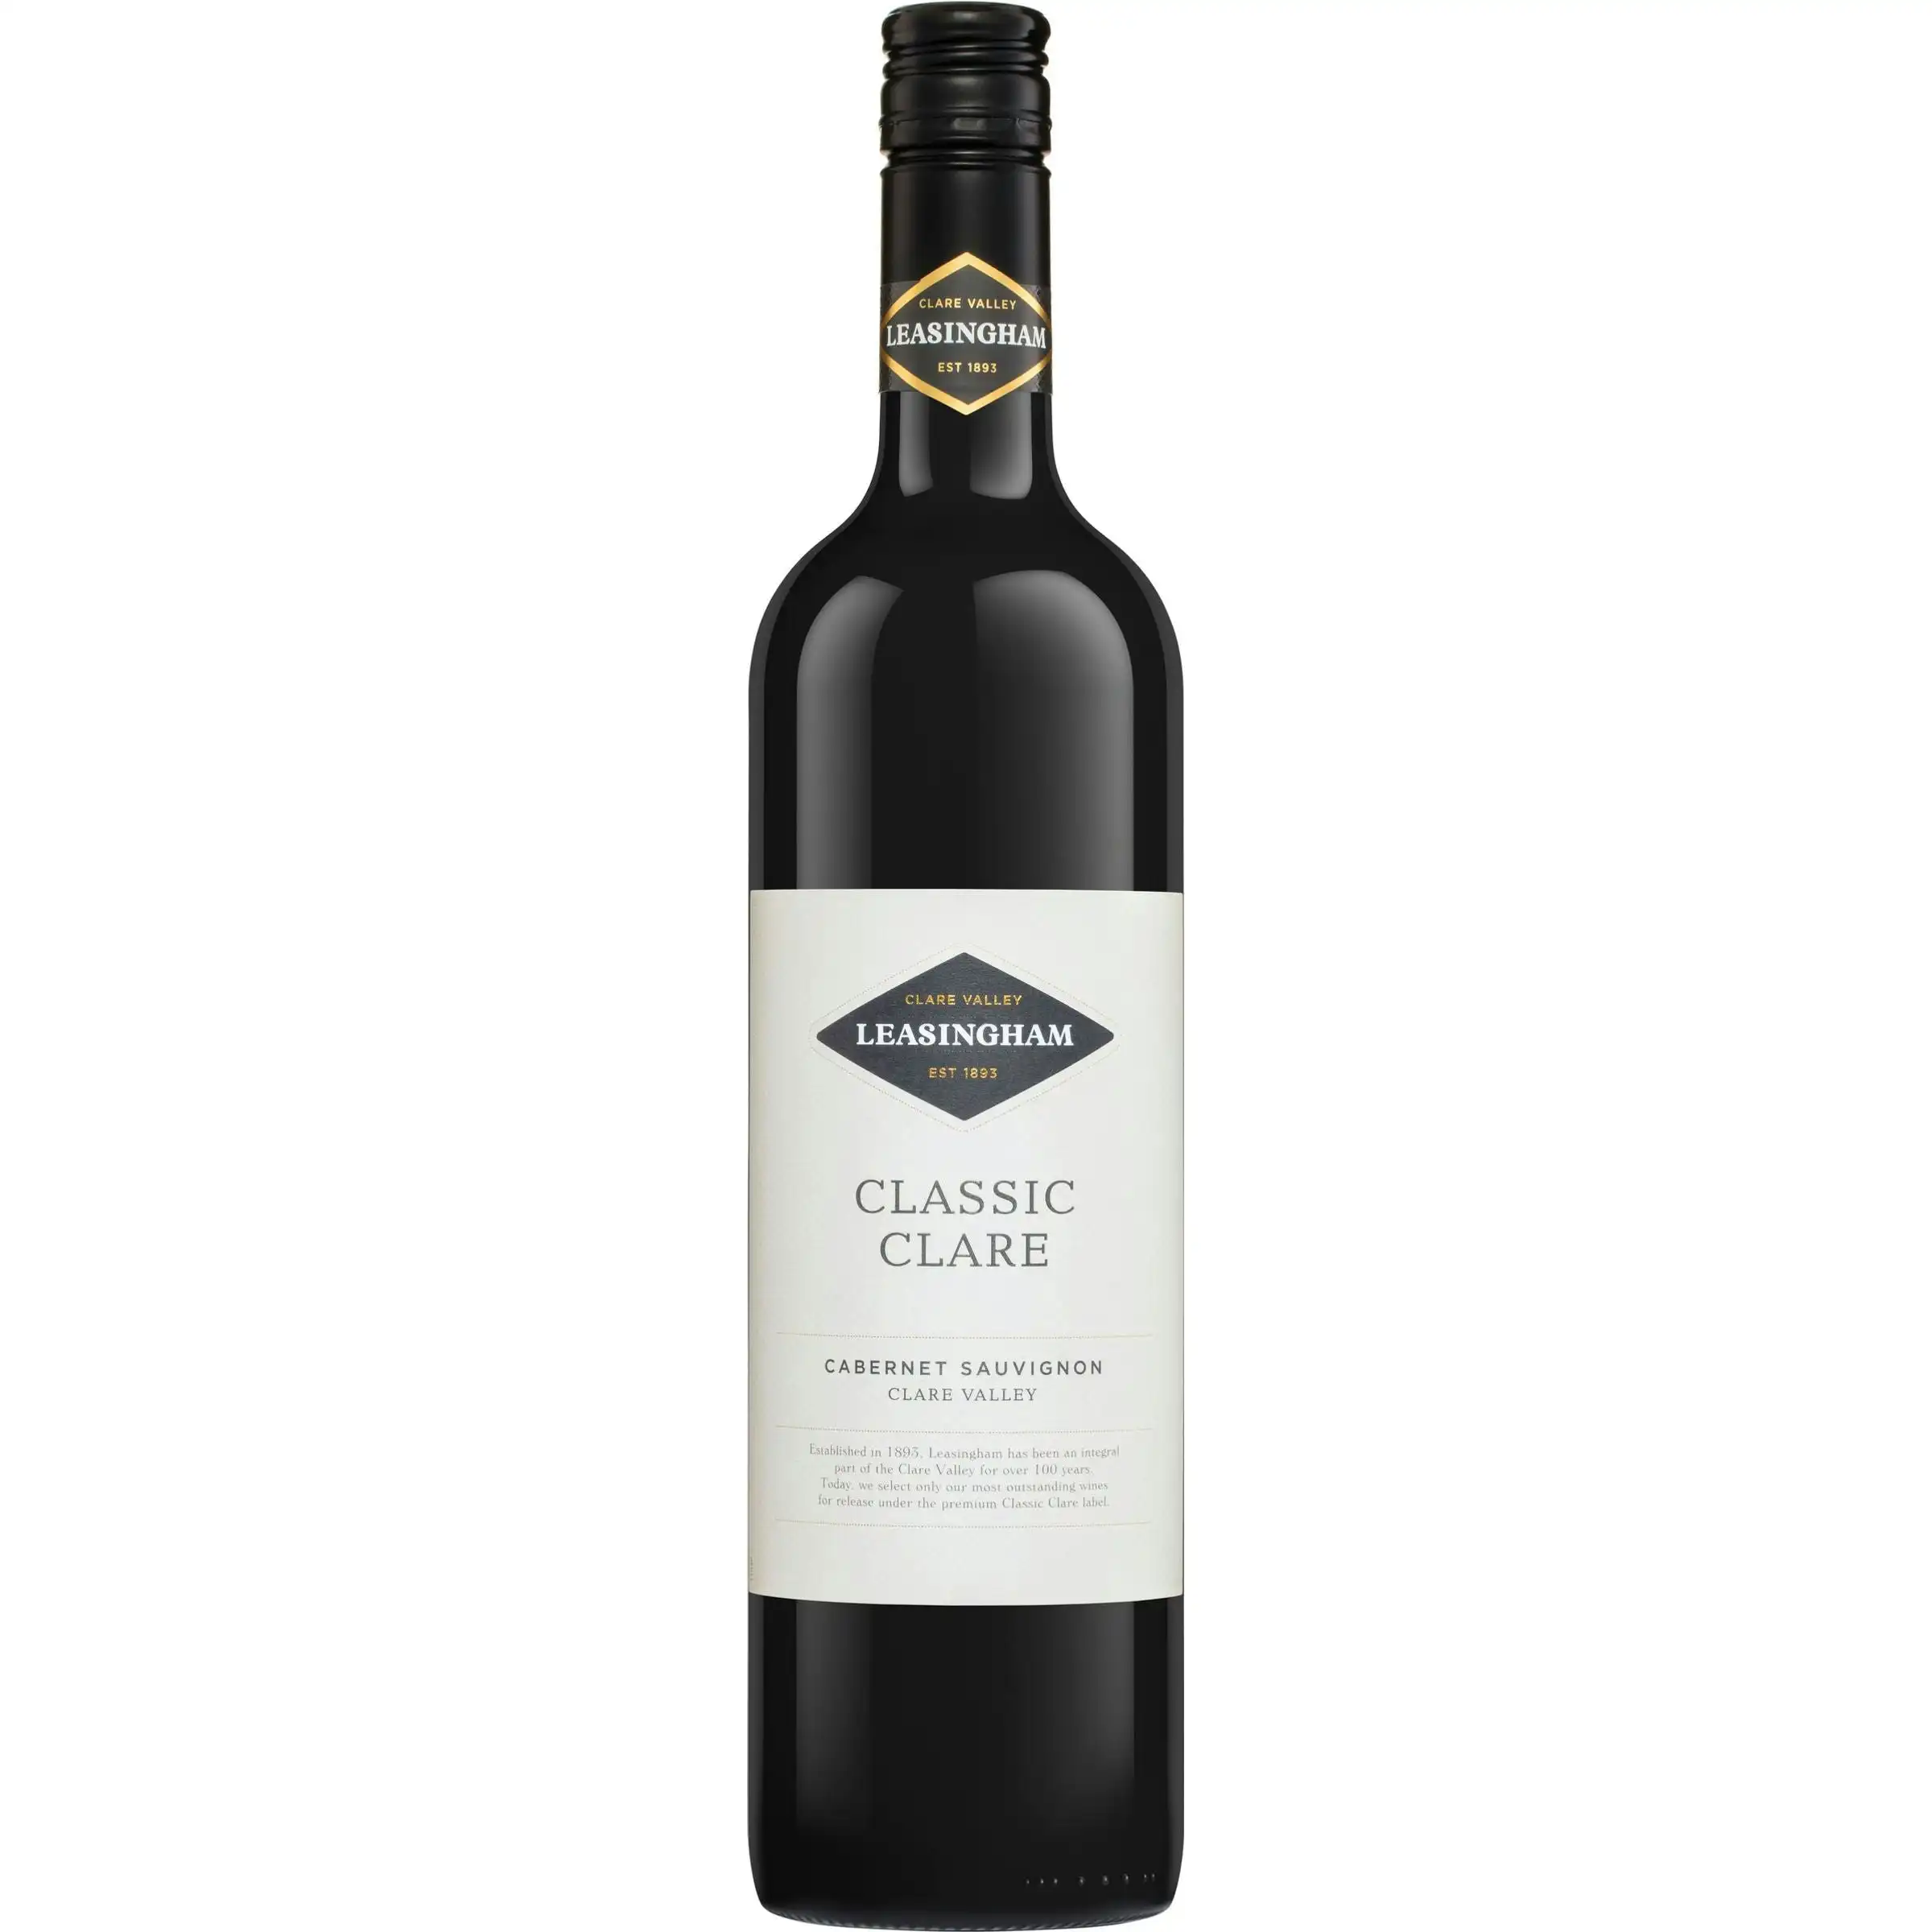 Leasingham Classic Clare Cabernet Sauvignon 2017 (6 bottles)